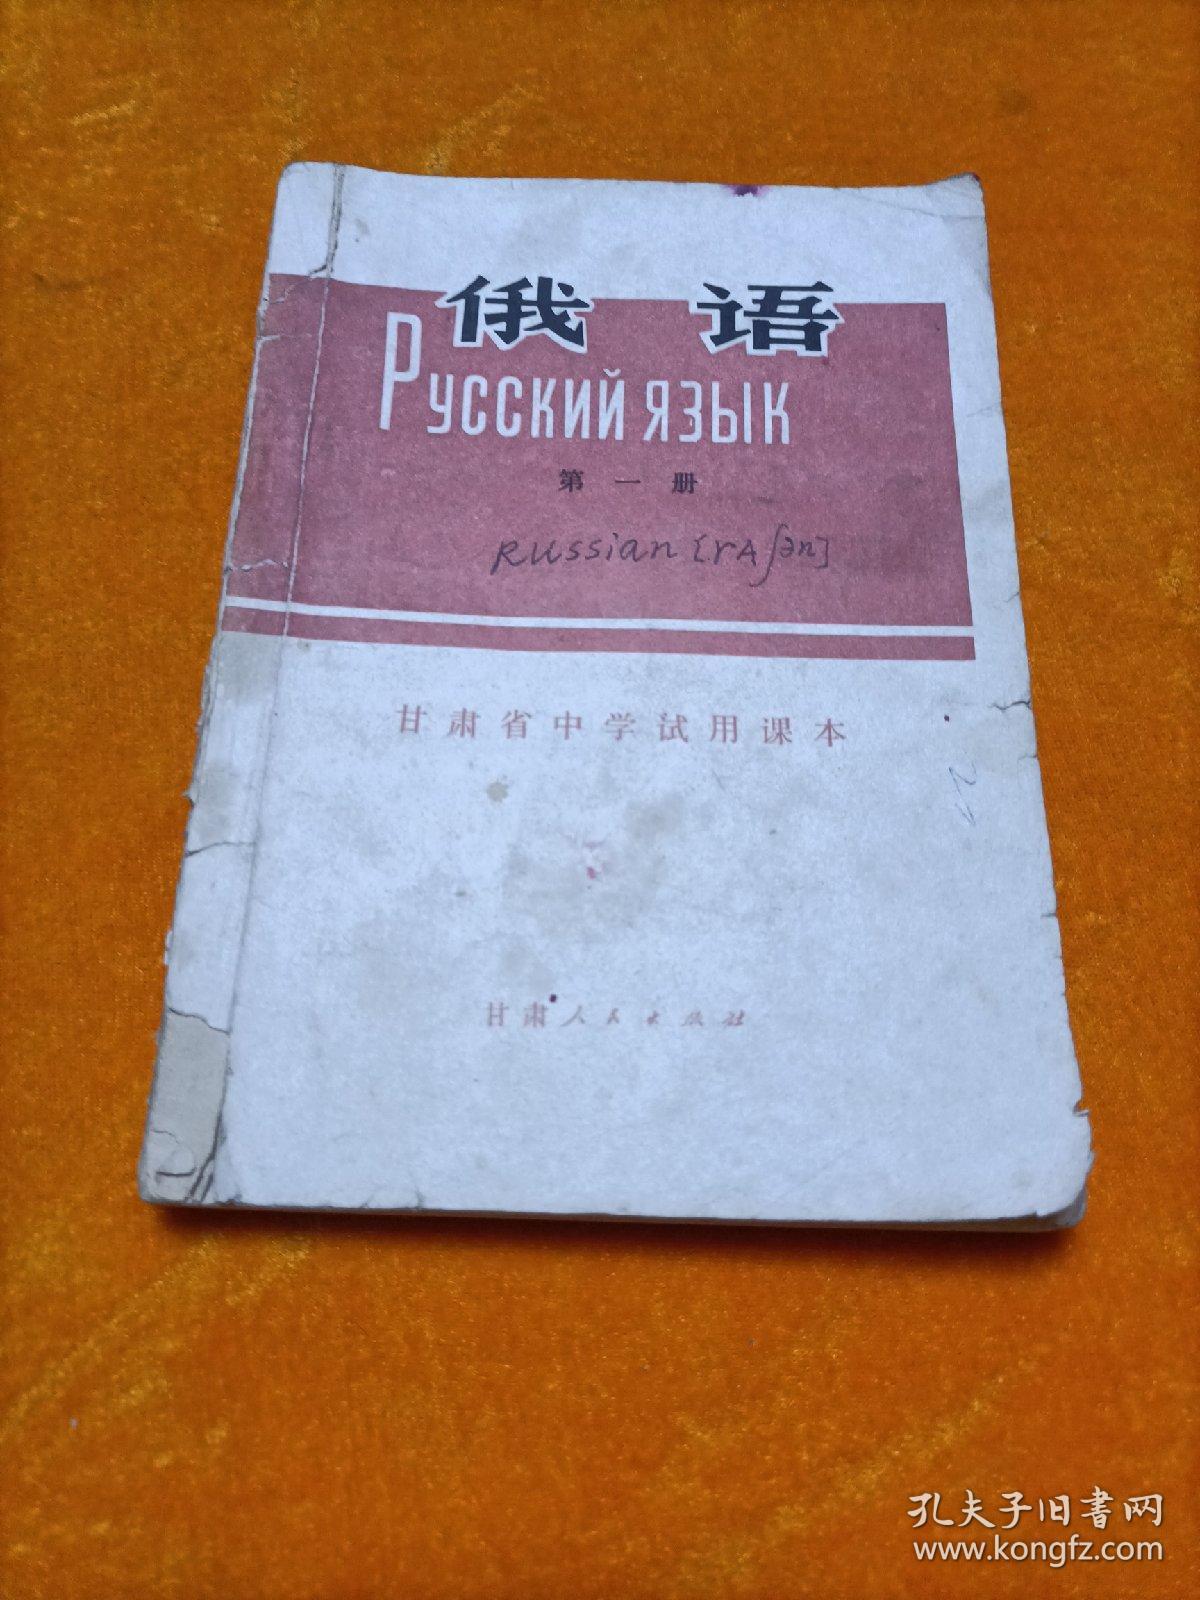 甘肃省中学试用课本俄语 第一册